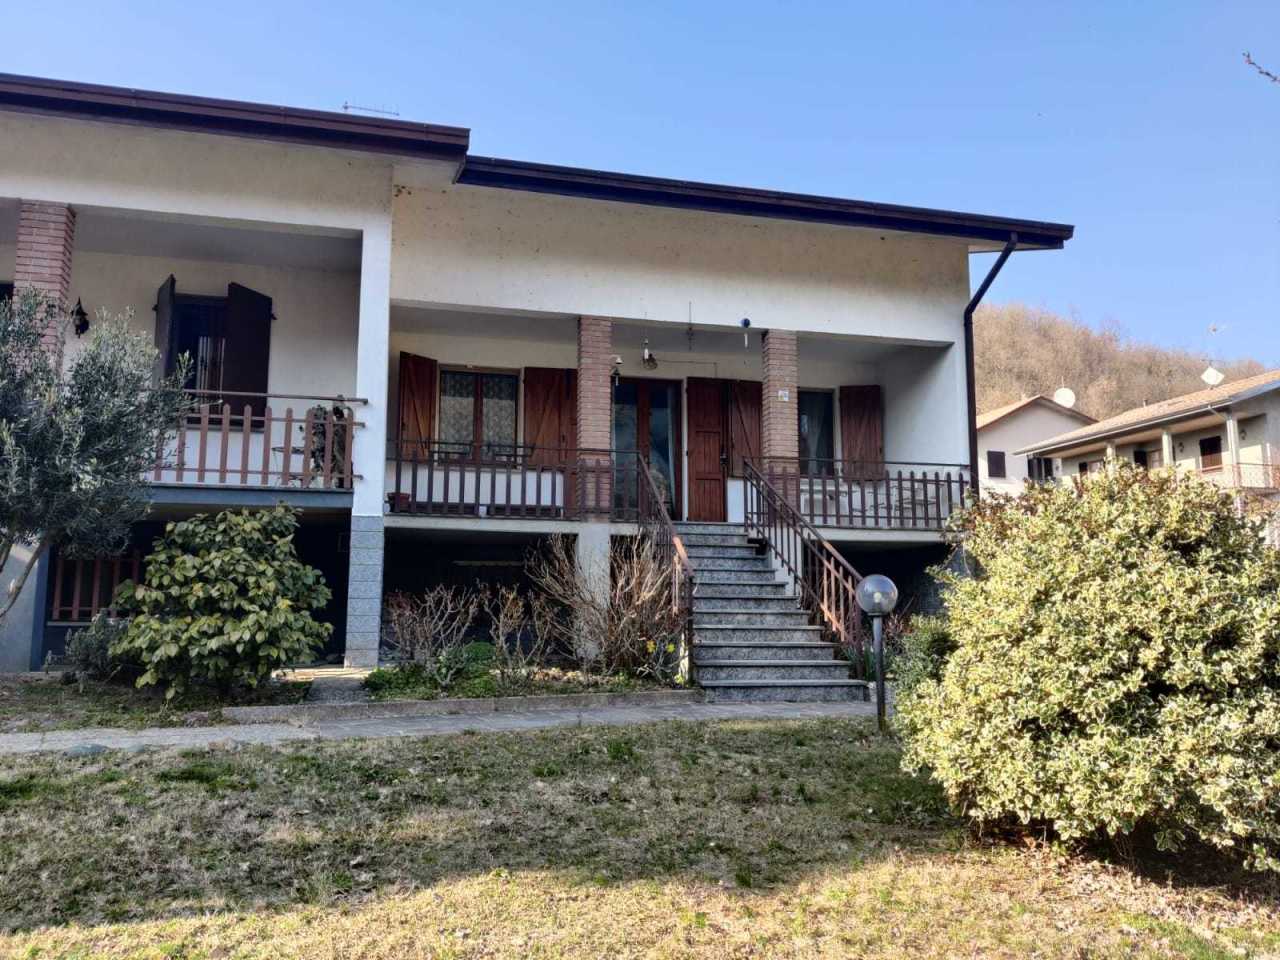 Villa a Schiera in vendita a Medesano, 5 locali, prezzo € 230.000 | PortaleAgenzieImmobiliari.it